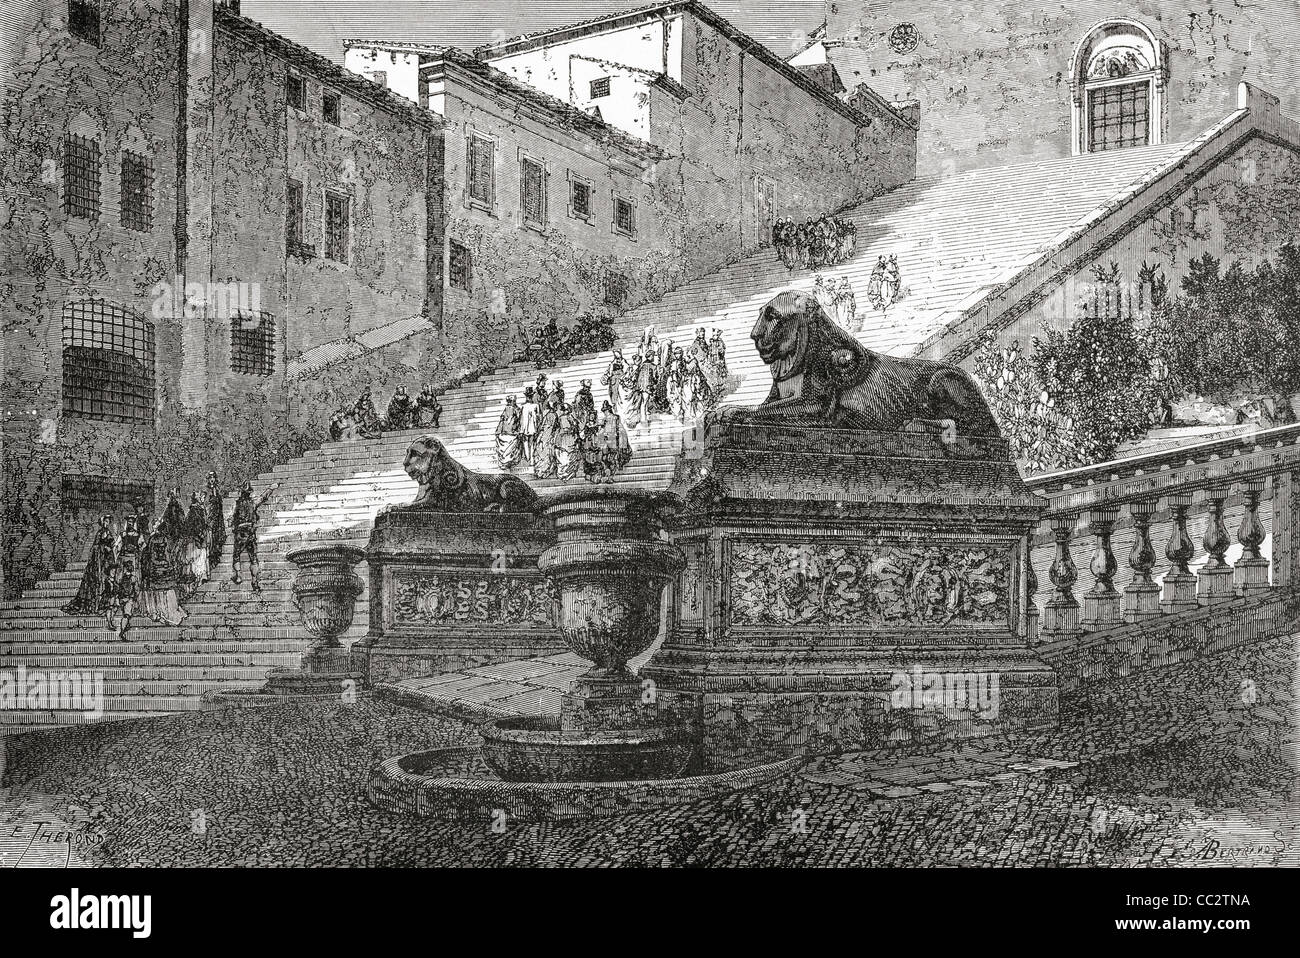 Escalera que conduce a la Basílica de Santa María del altar del cielo, Roma, Italia, a finales del siglo XIX. Foto de stock